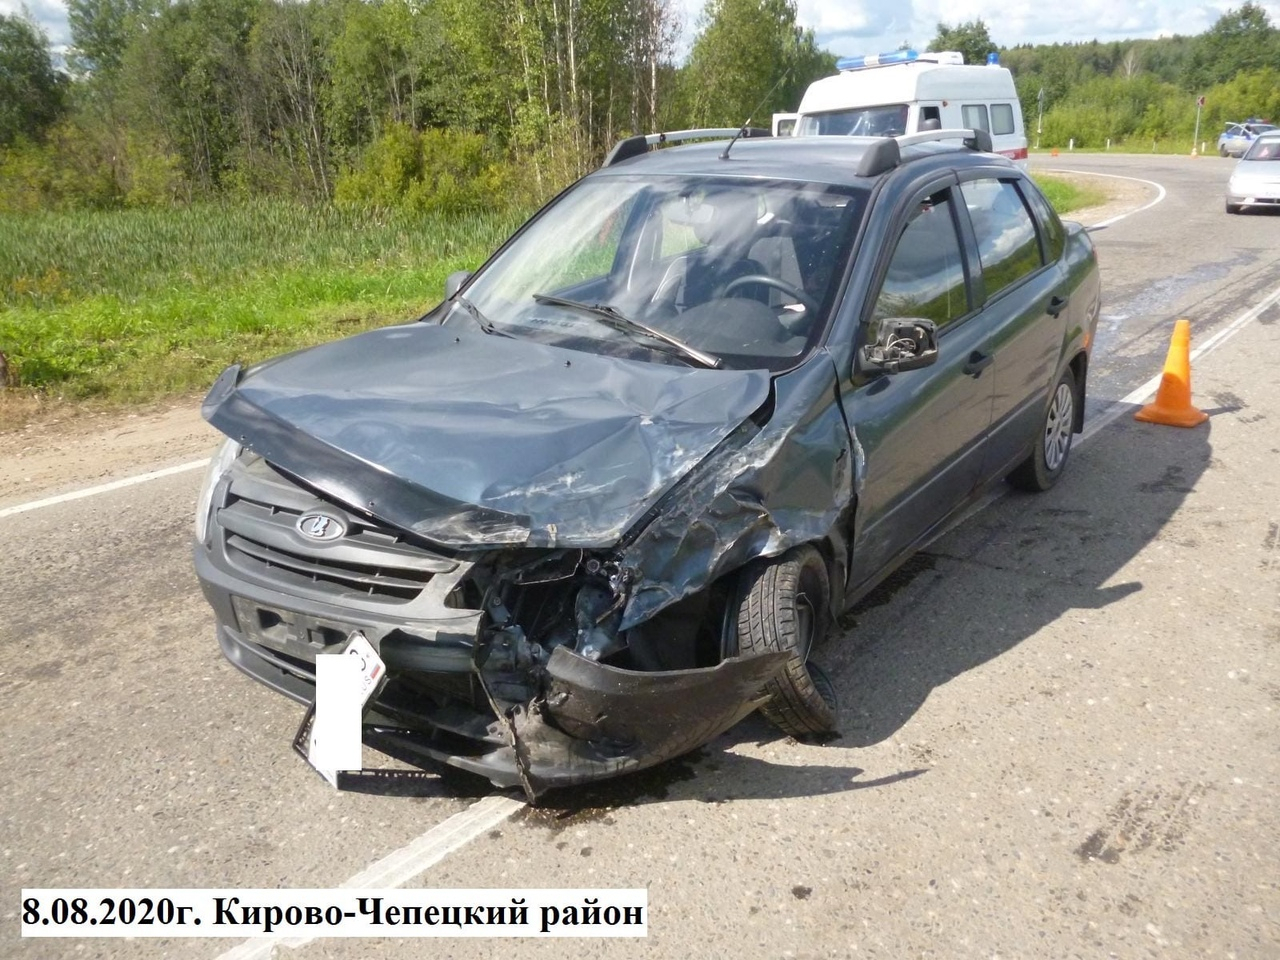 В Кирово-Чепецком районе лоб в лоб столкнулись два ВАЗа: есть пострадавшие